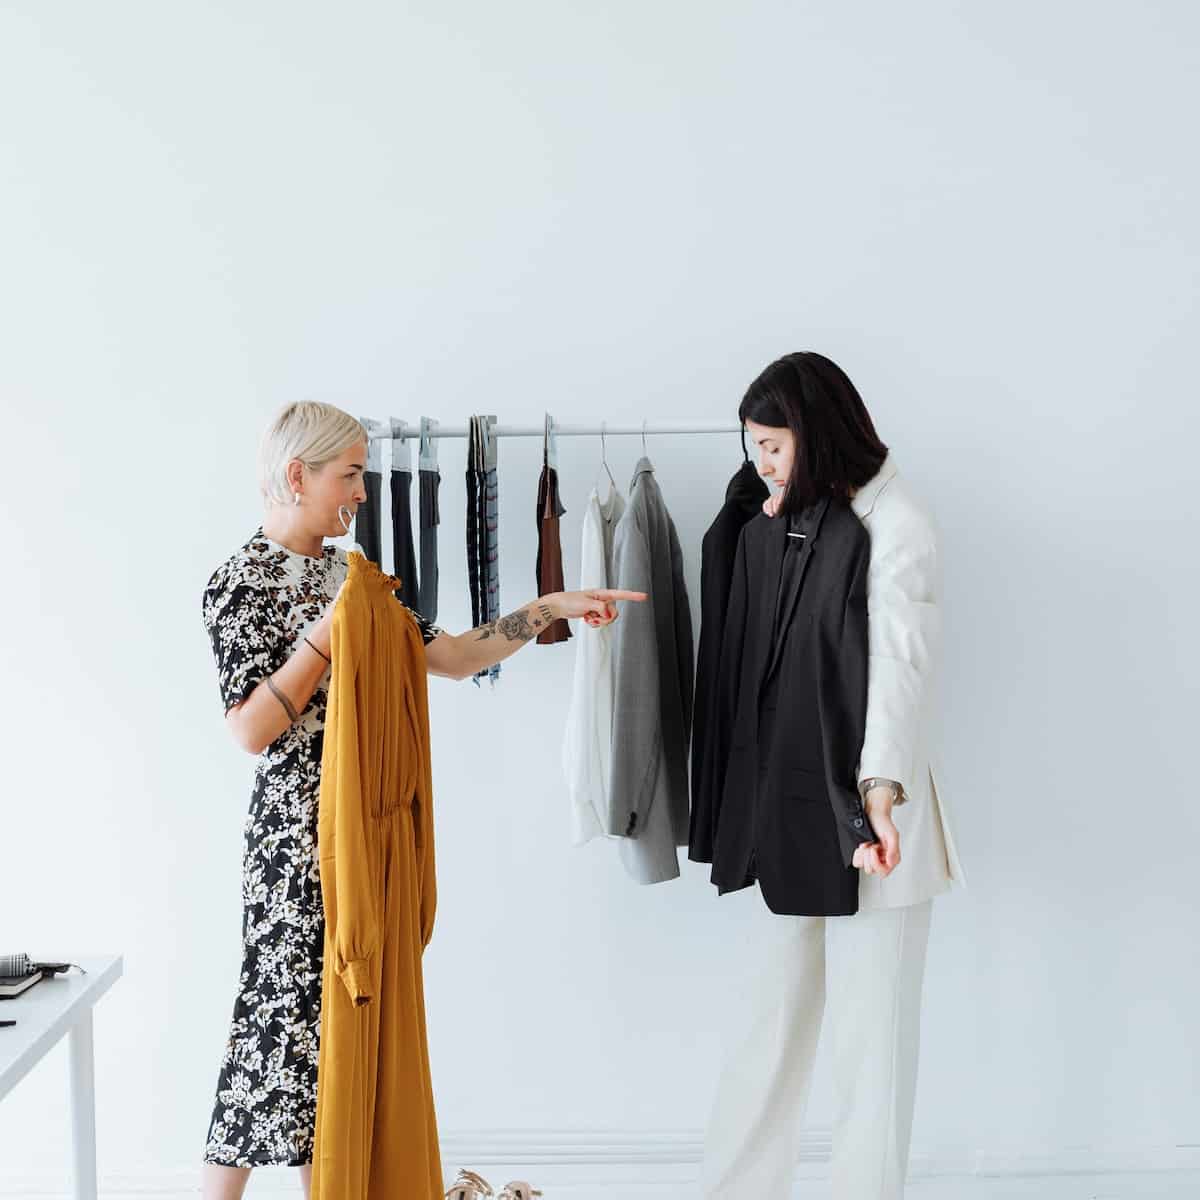 Fashion-swap: due donne discutono di due vestiti durante uno swap party